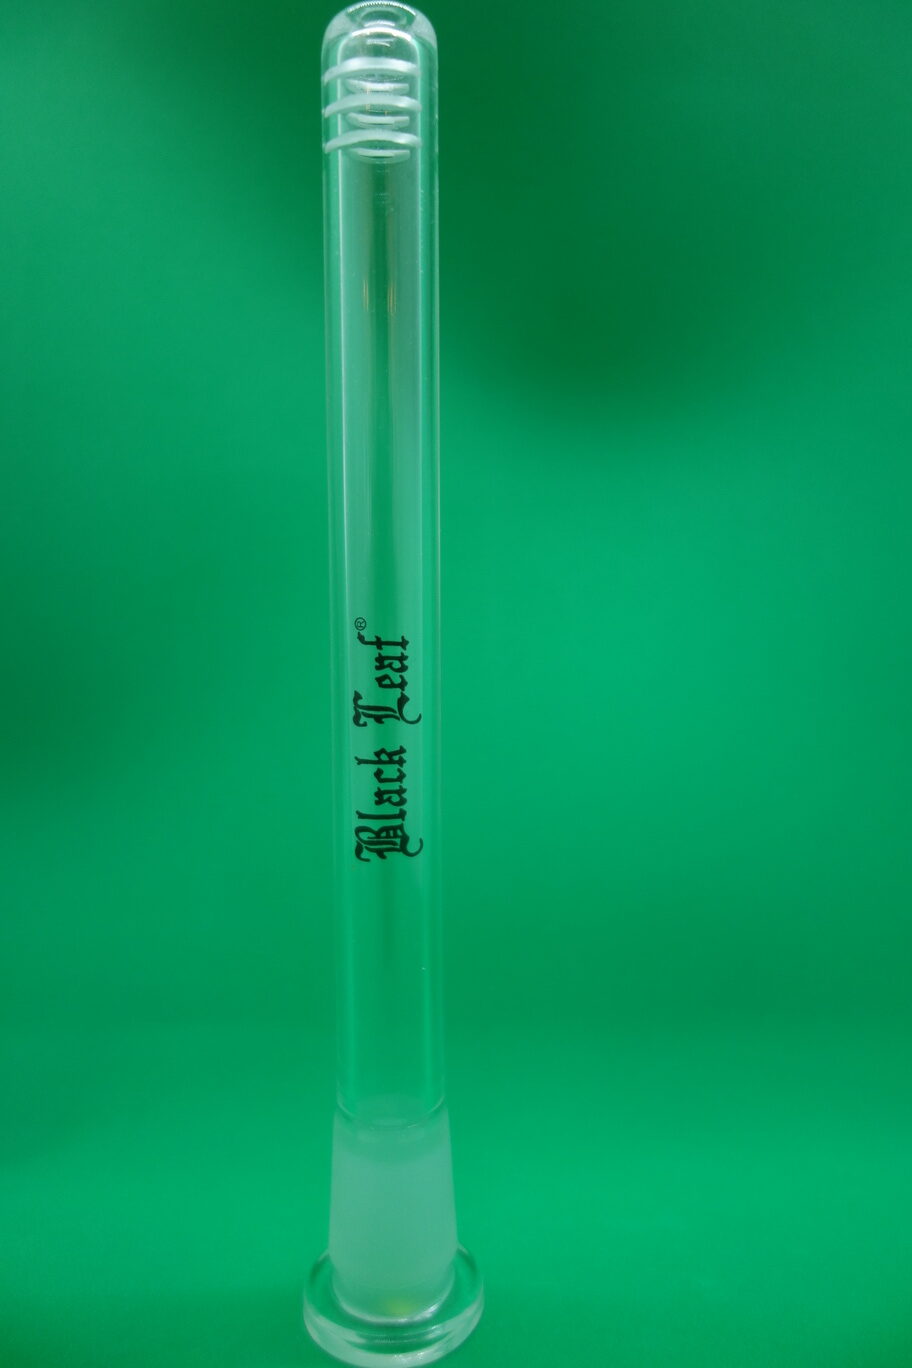 Glas-Chillumg mit Black Leaf Aufschrift und Schlitzen zur besseren Kühlung (Schlitzdiffusor)